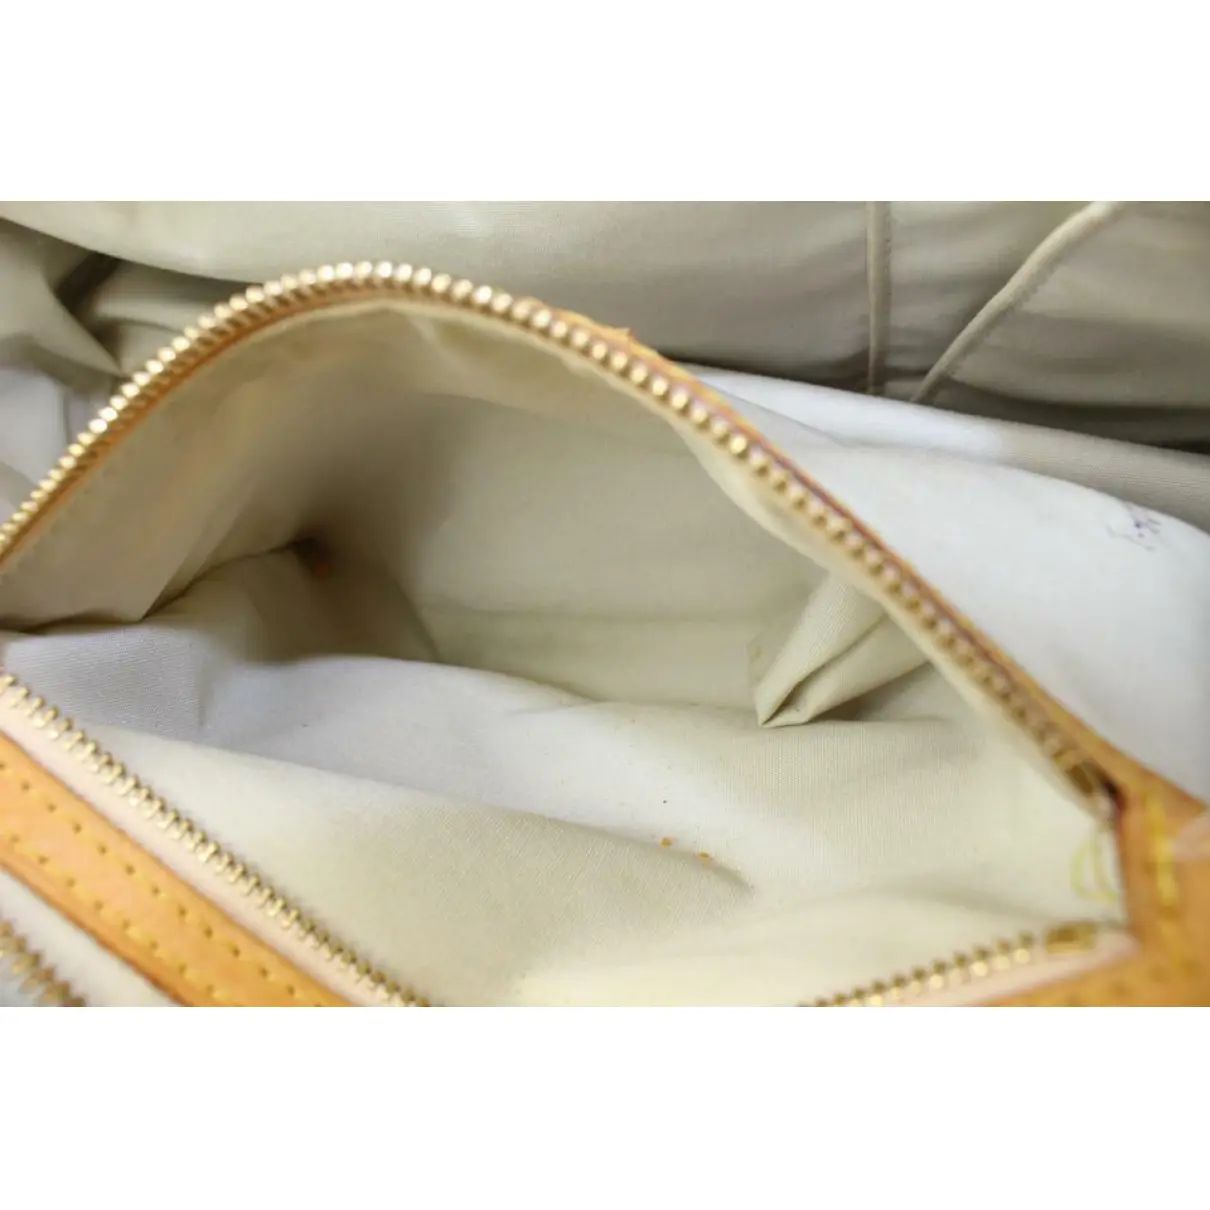 Marie patent leather satchel Louis Vuitton